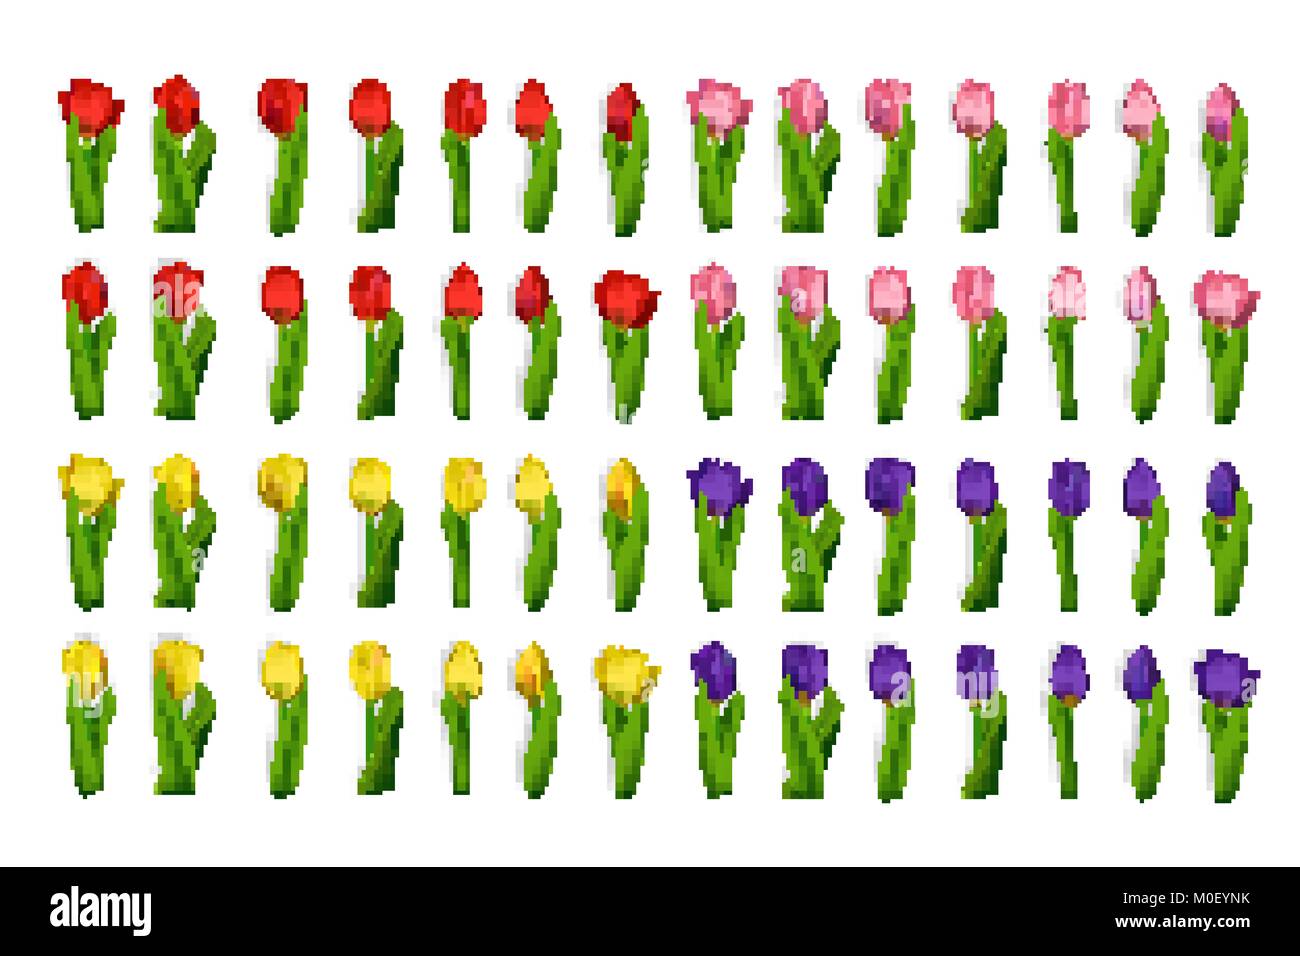 Realistische Tulpen grosse Blumen gesetzt Stock Vektor